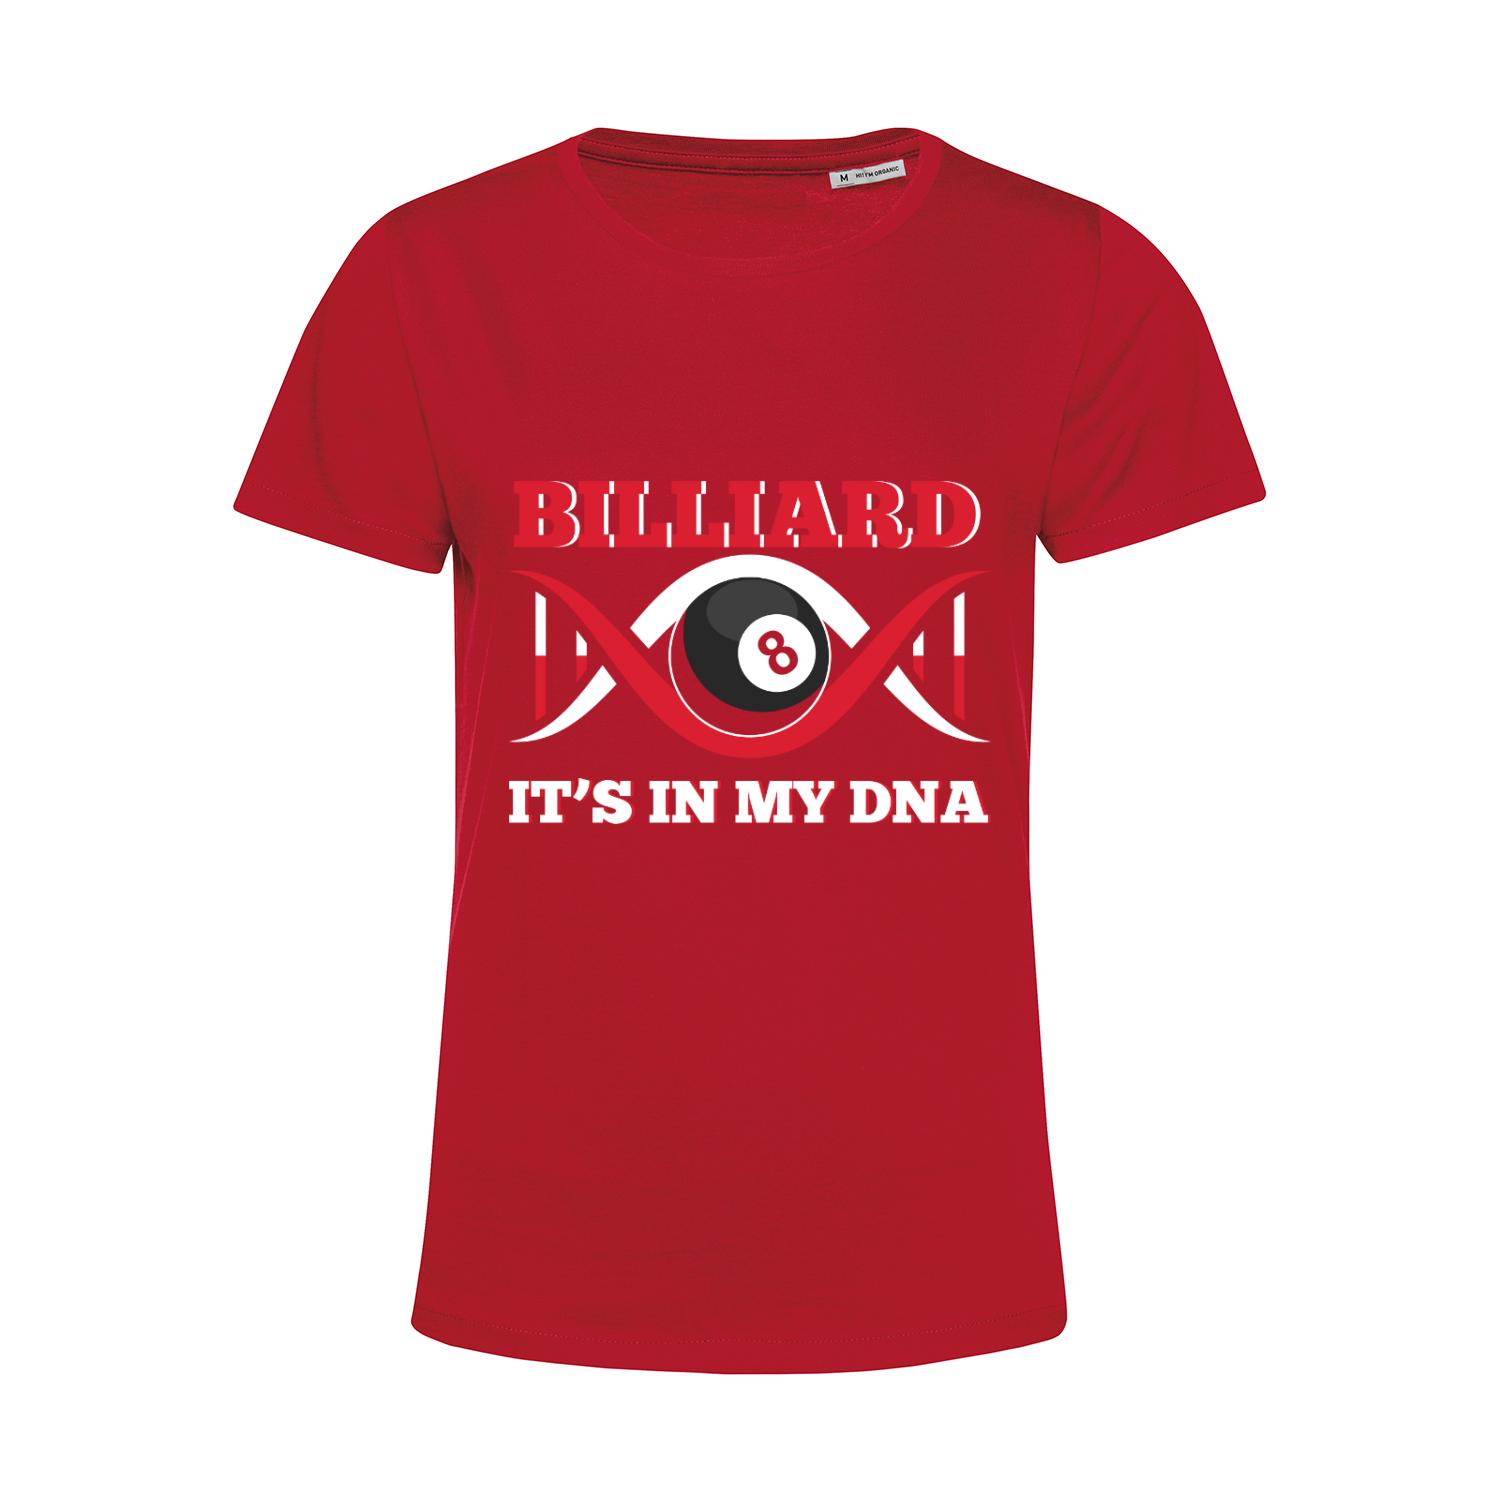 Nachhaltiges T-Shirt Damen Billard is in my DNA